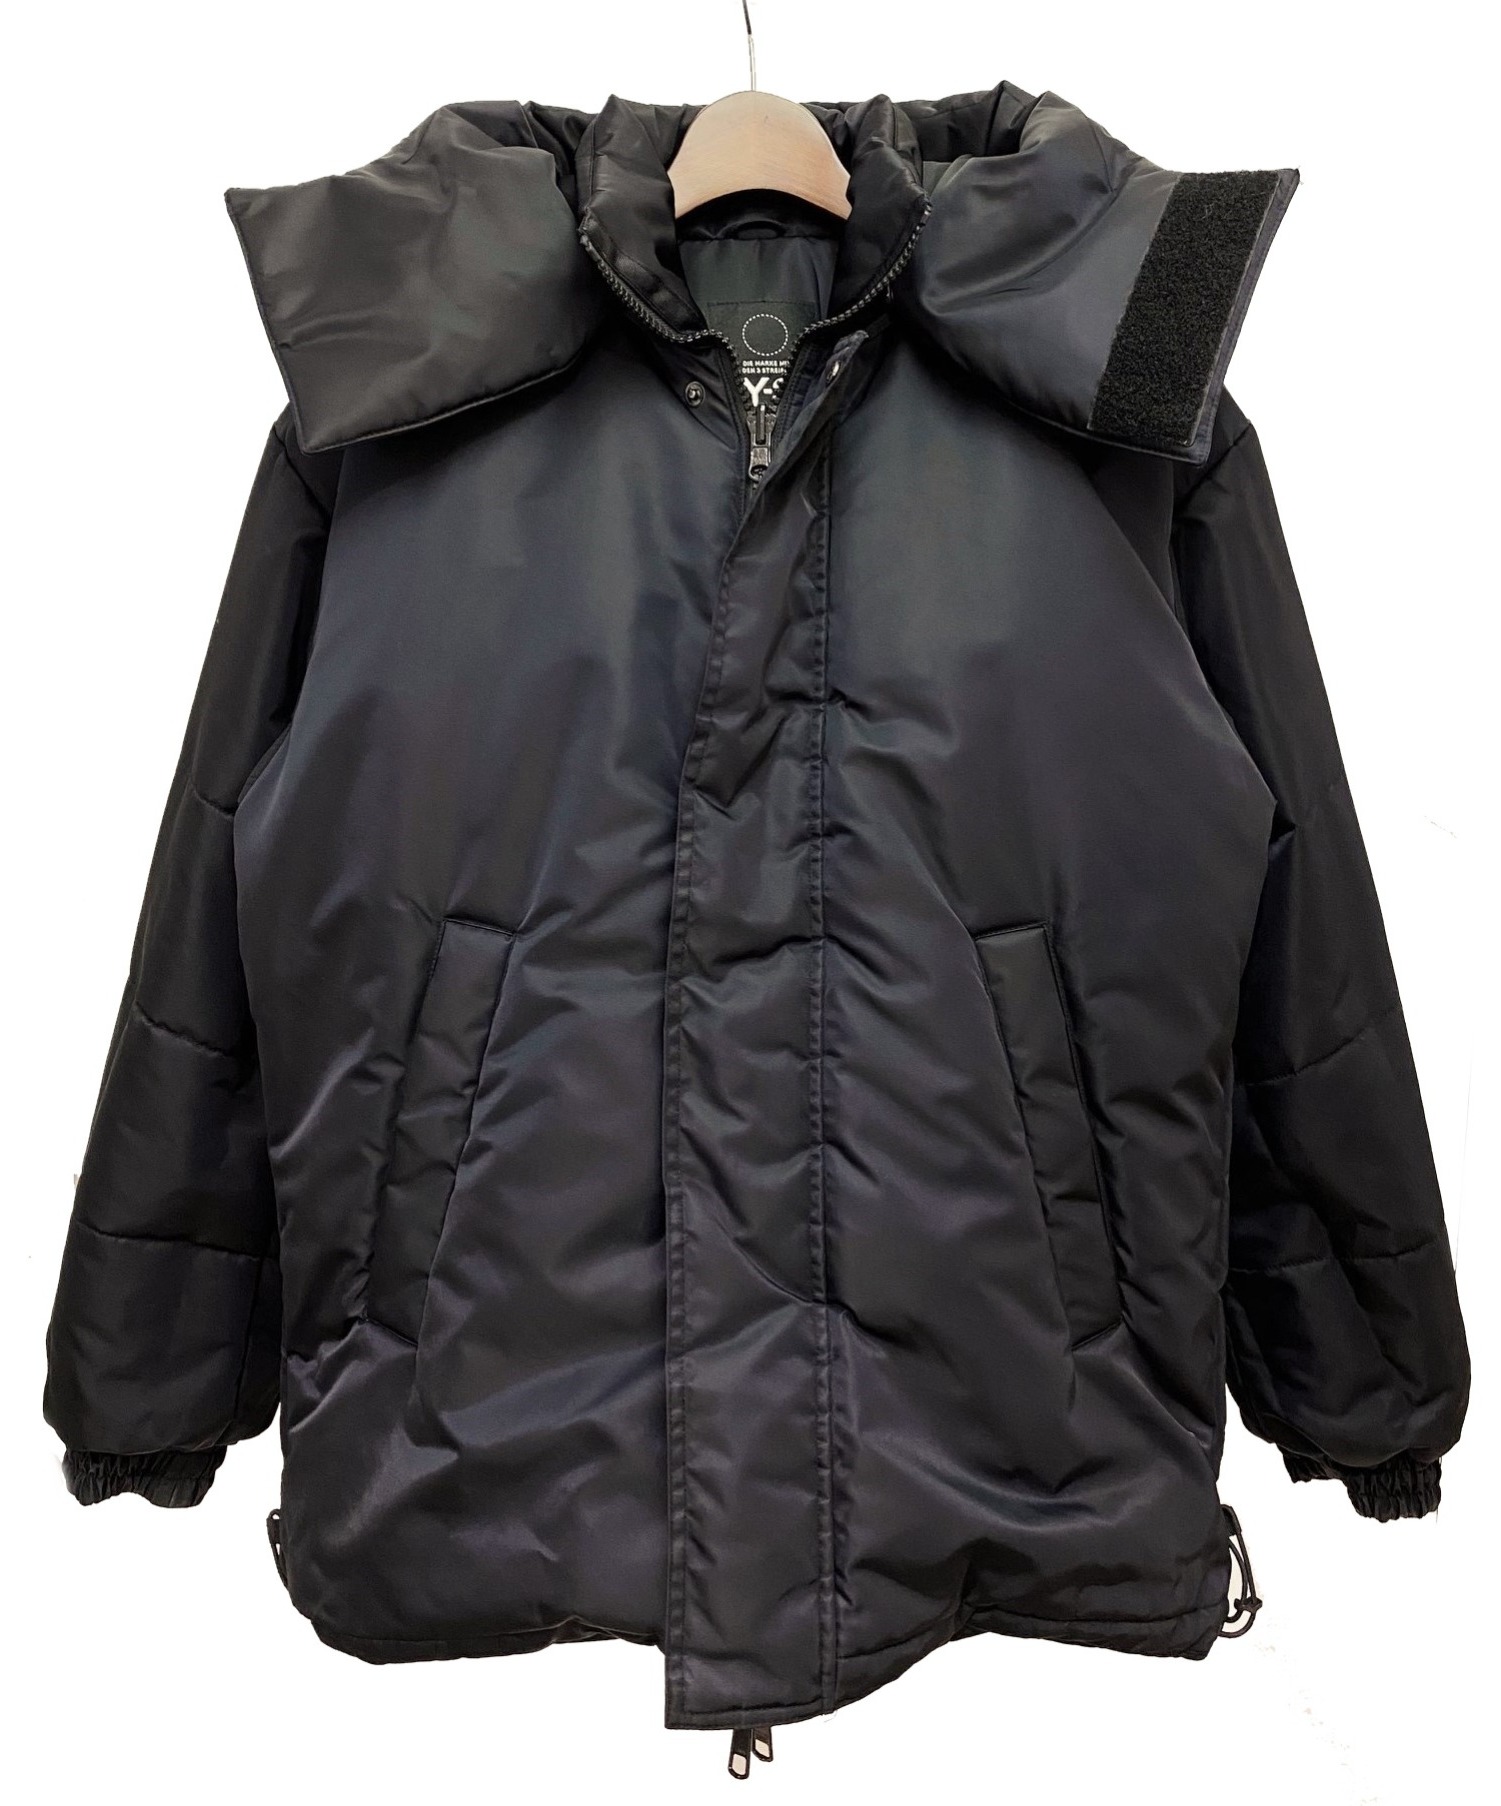 Y-3 (ワイスリー) M Padded Jacket ブラック サイズ:S